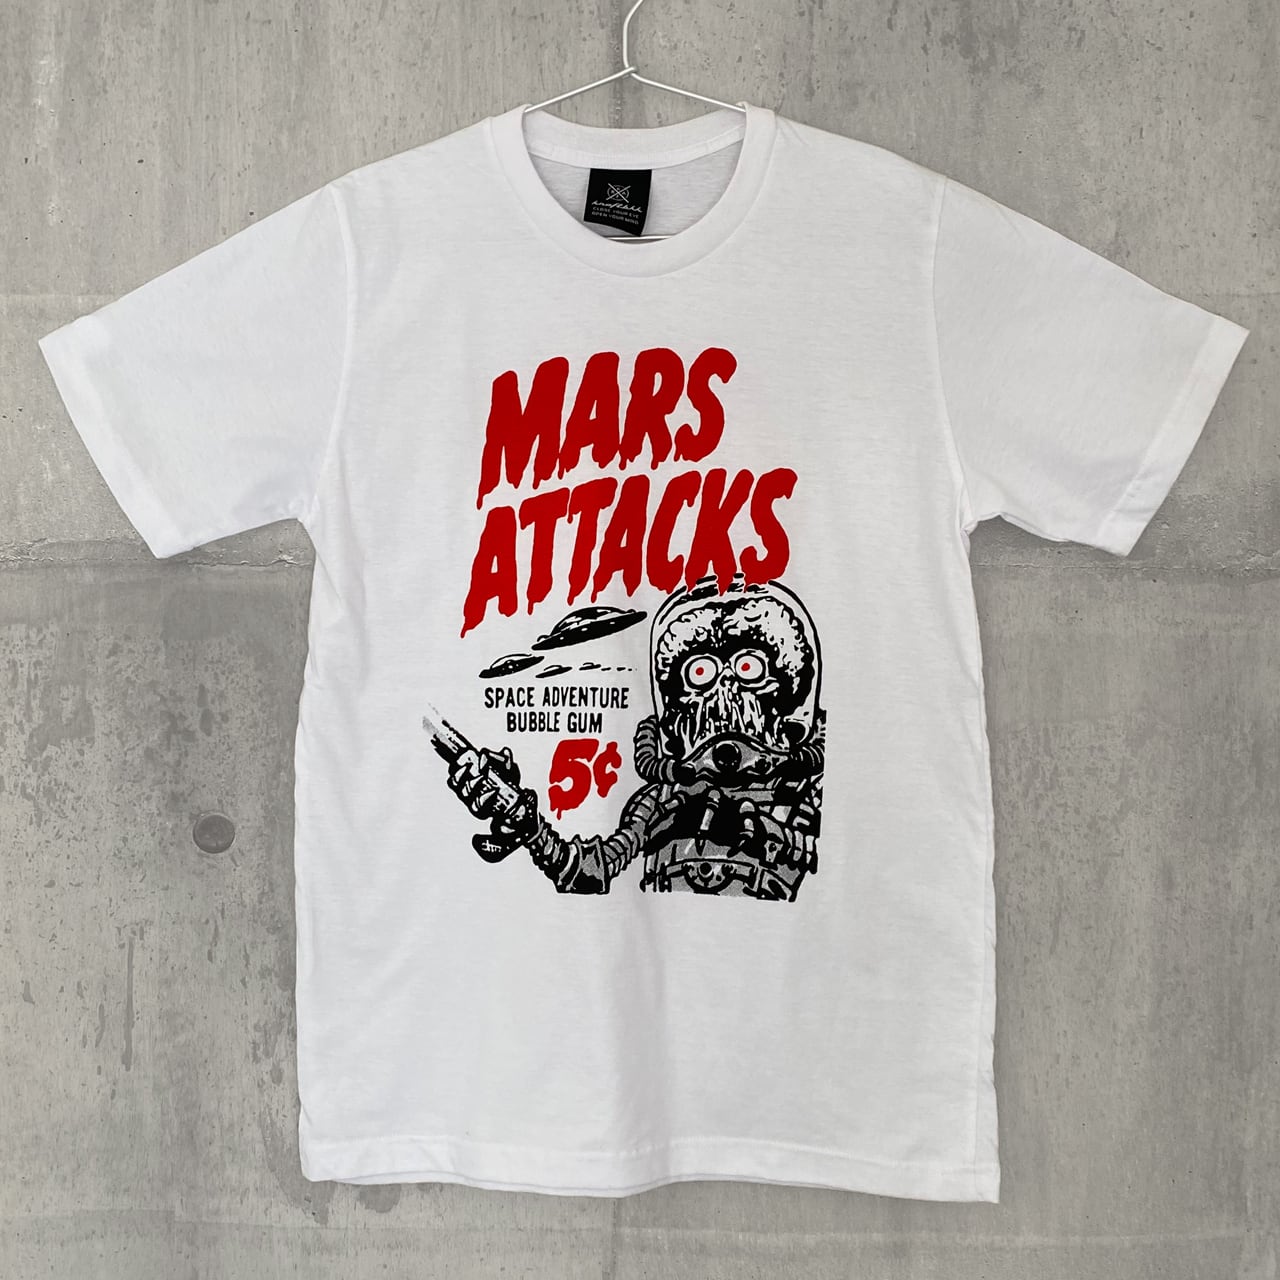 MARS ATTACKS 半袖シャツ アロハシャツ マーズアタック